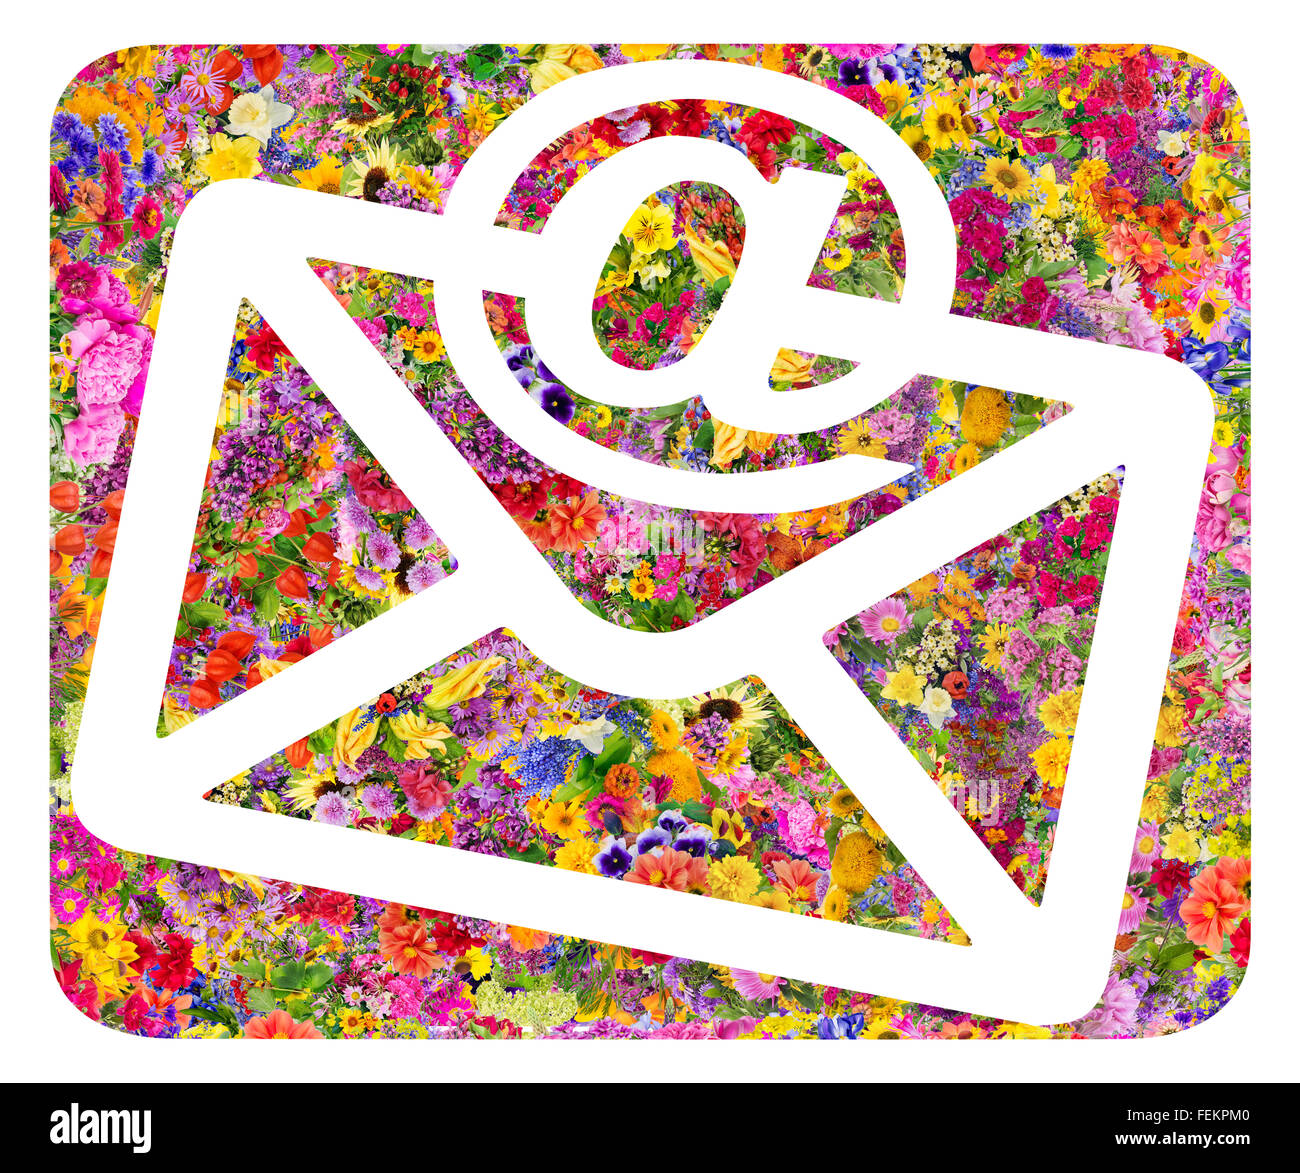 Enveloppe poste standard mondial et symbole de l'e-mail collage. Résumé de l'image isolée fait main fleurs d'été Banque D'Images